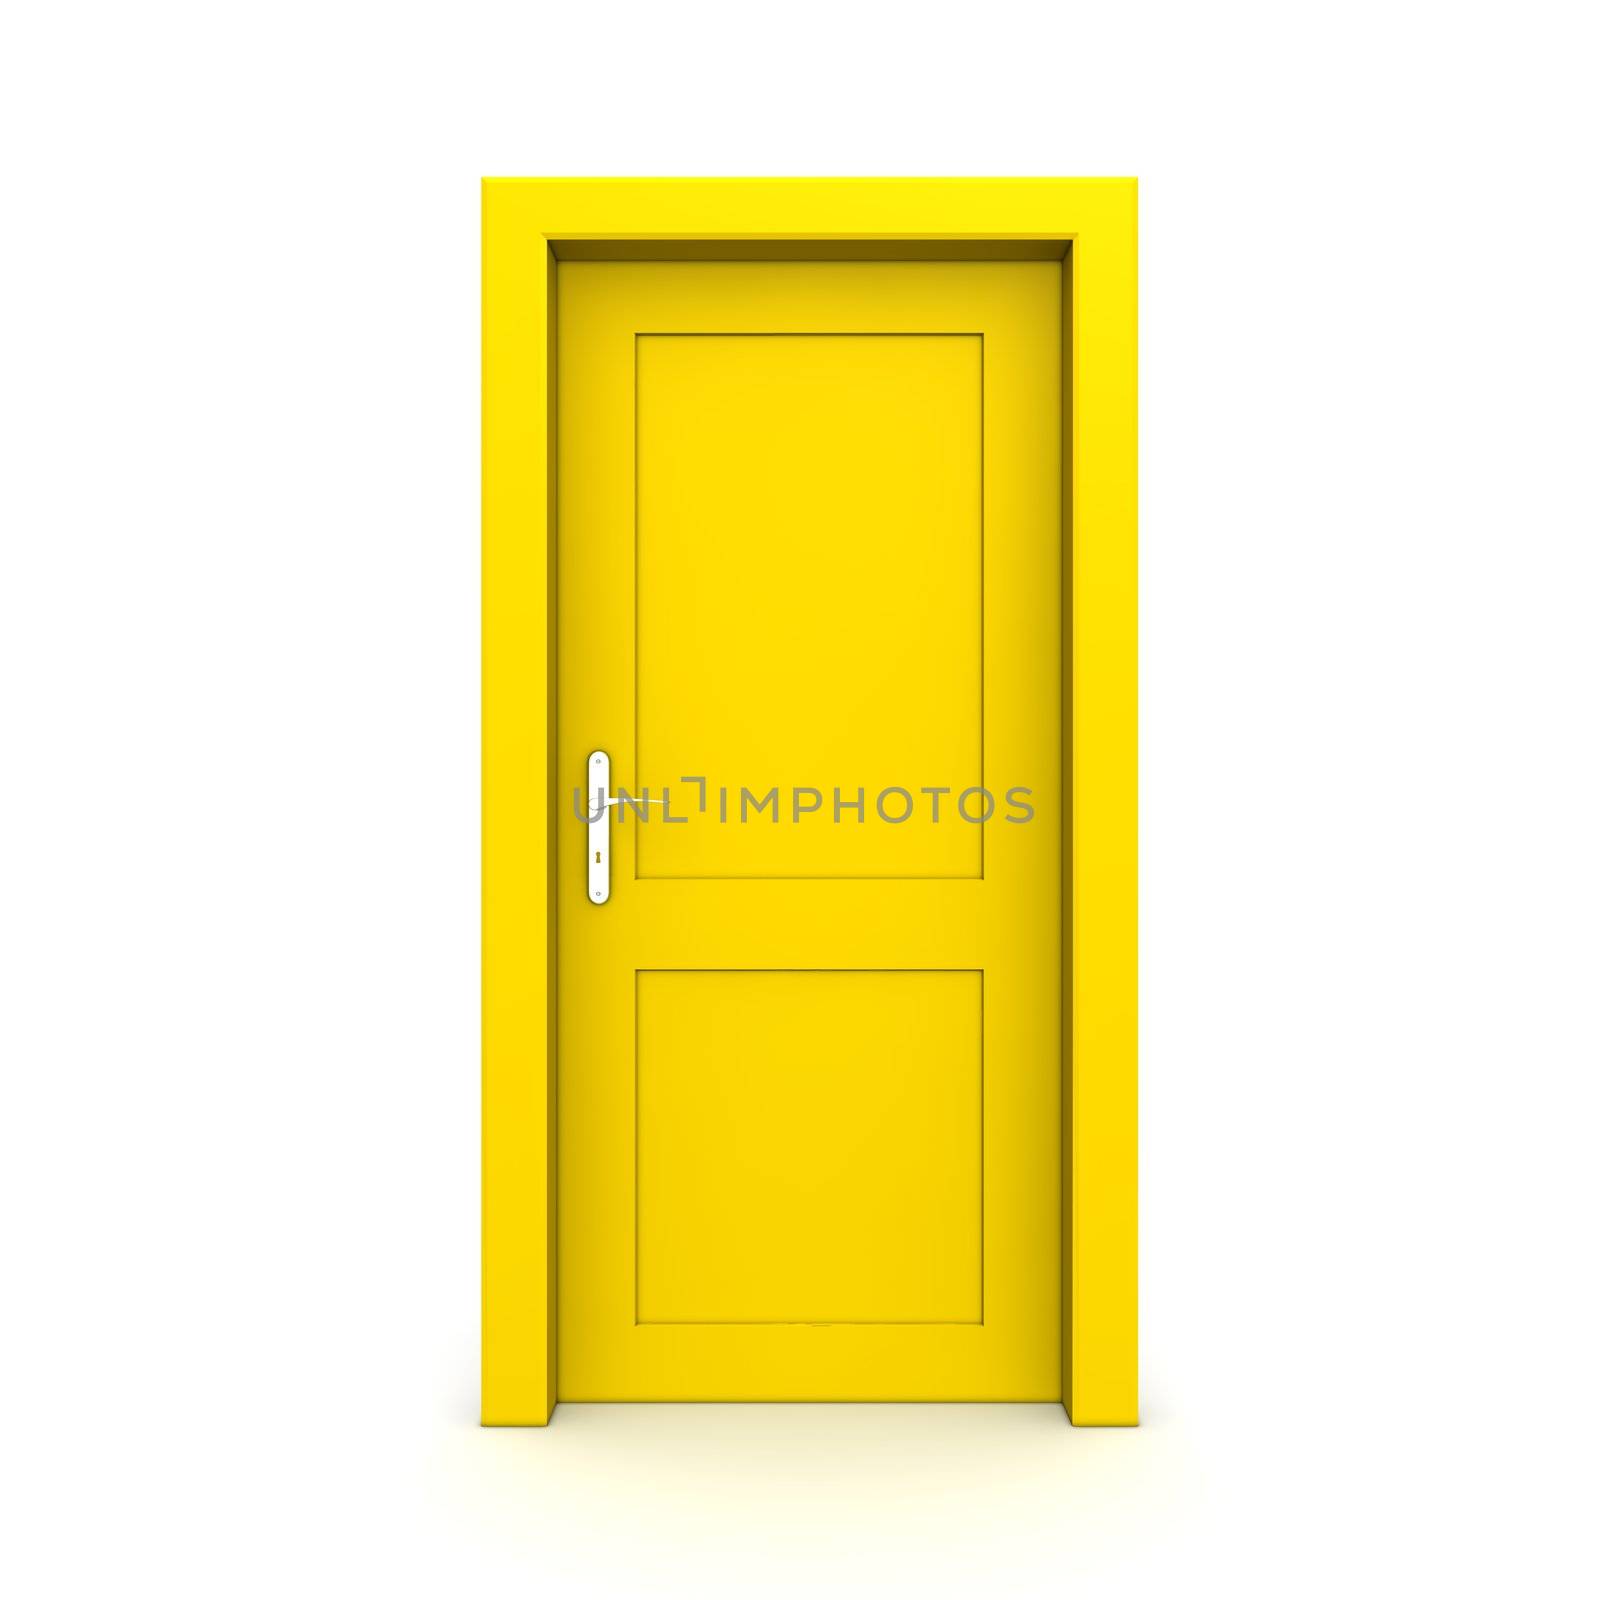 single yellow door closed - door frame only, no walls